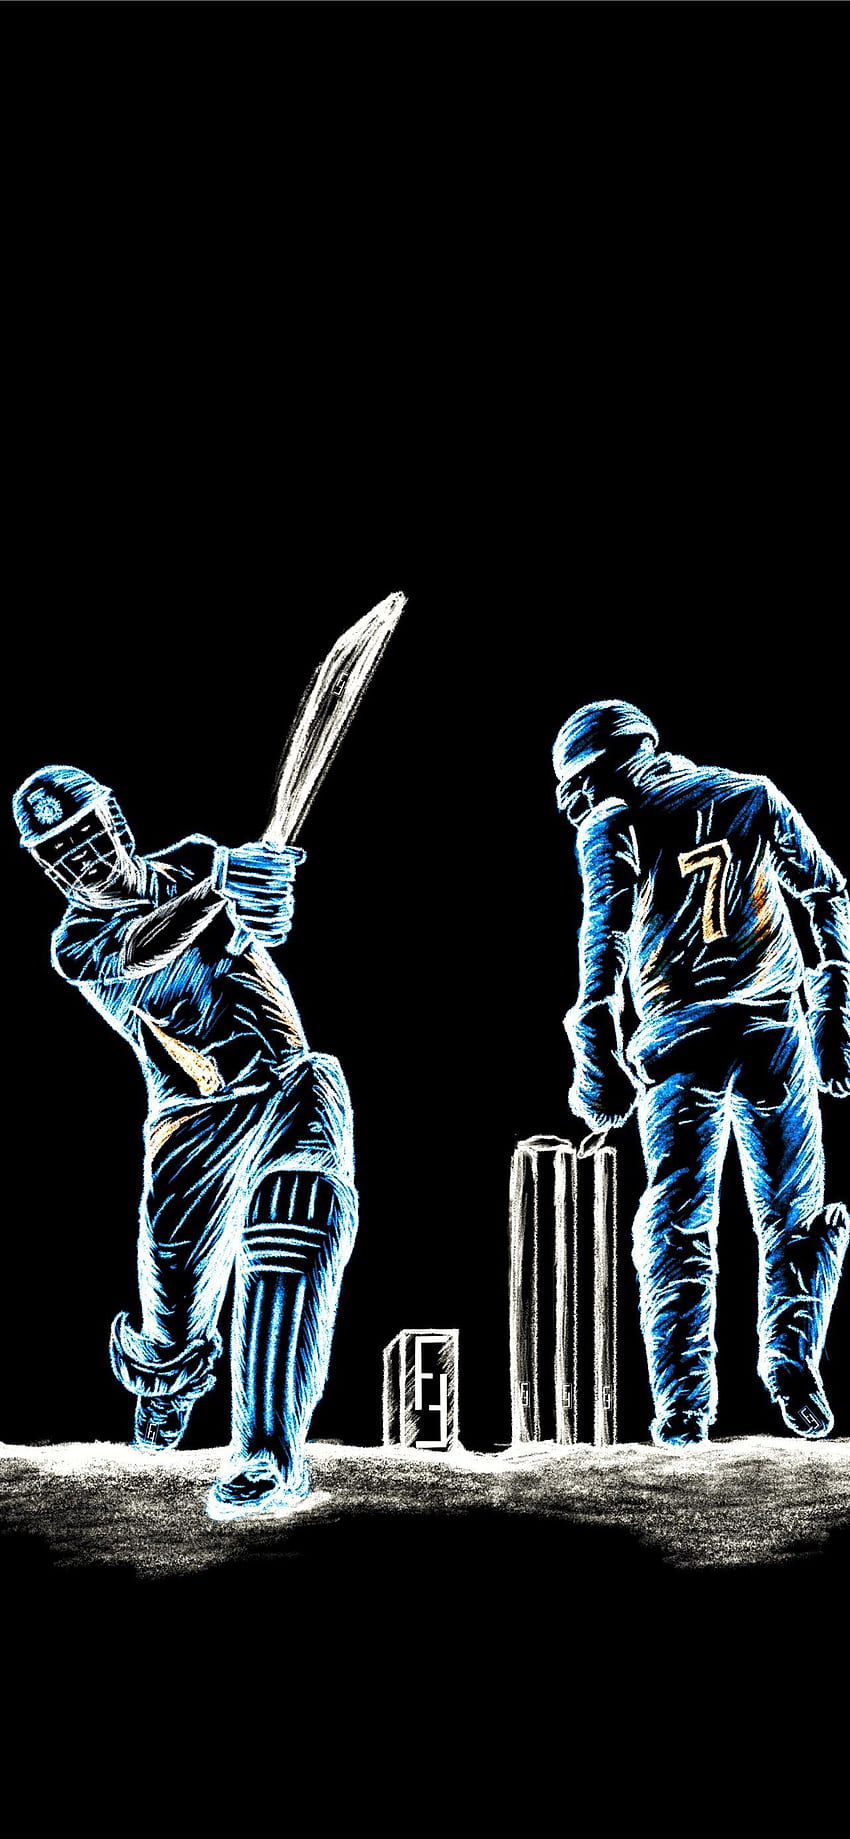 Cricket Wallpaper